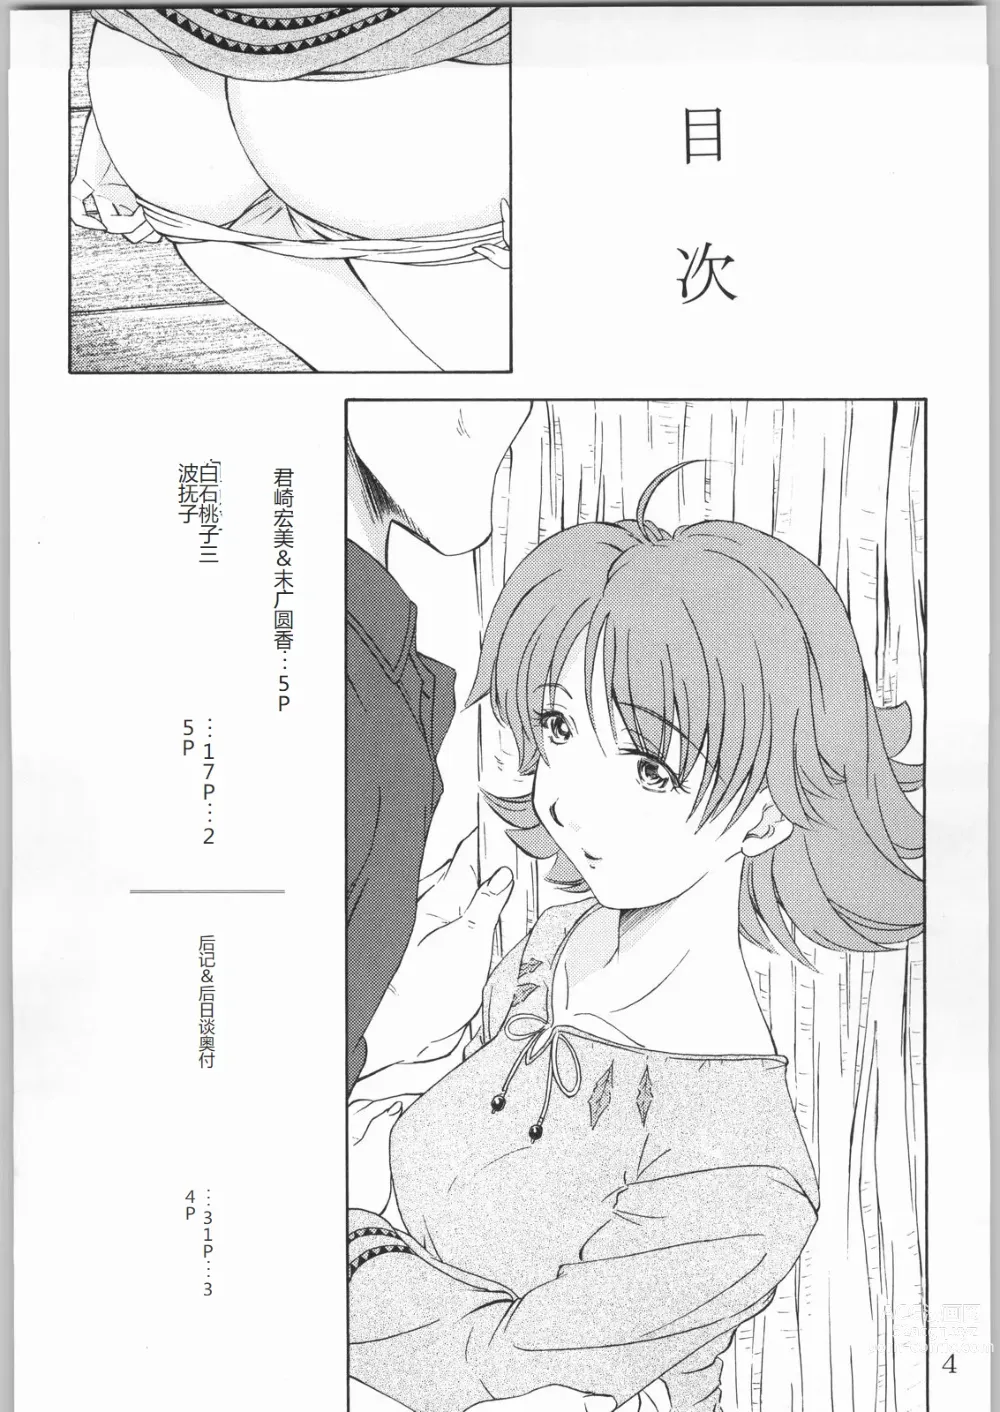 Page 3 of doujinshi Tokkyuu! Onigoroshi